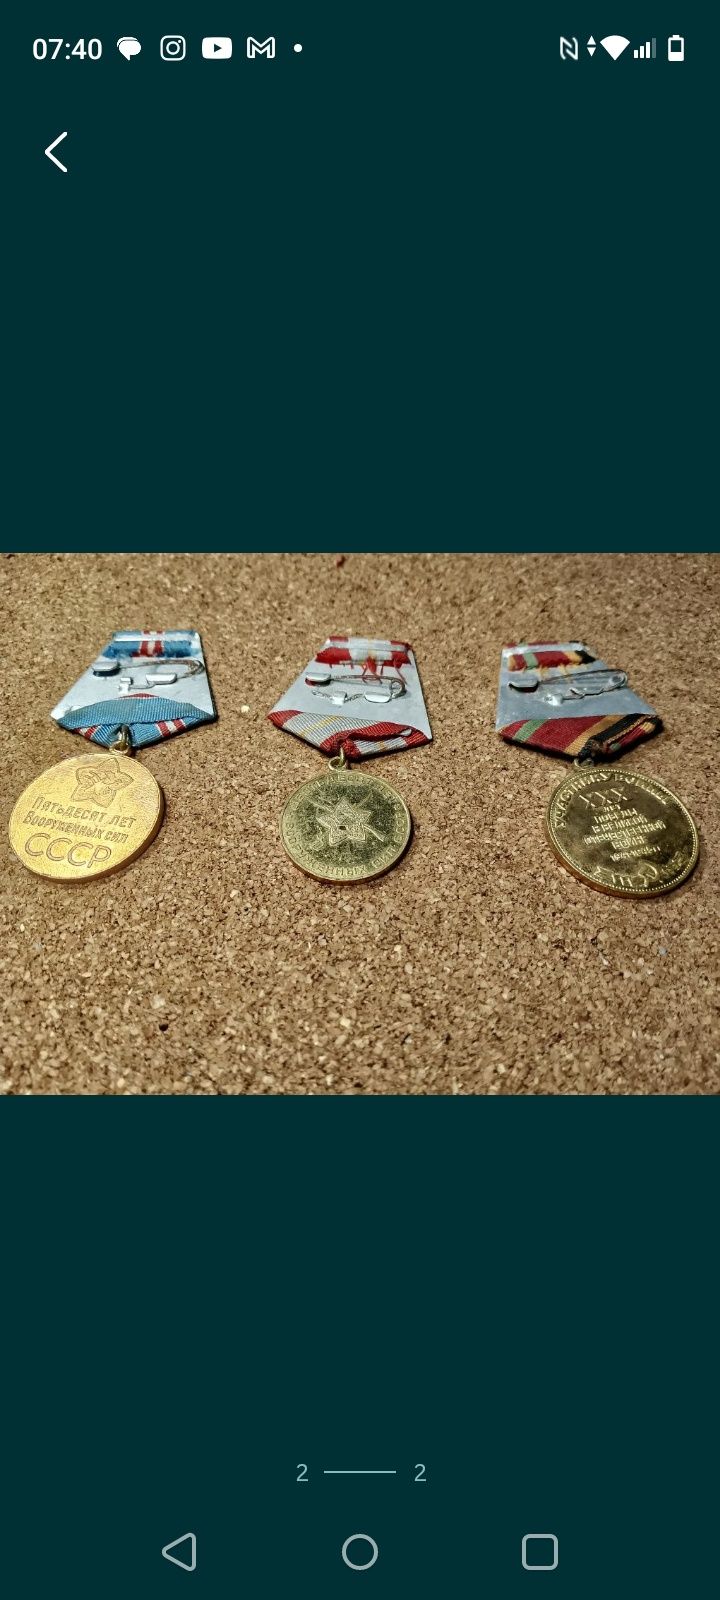 zestaw medali ZSRR.
1,50 lat Sił Zbrojnych ZSRR.
2,60 lat Sił Zbrojnyc